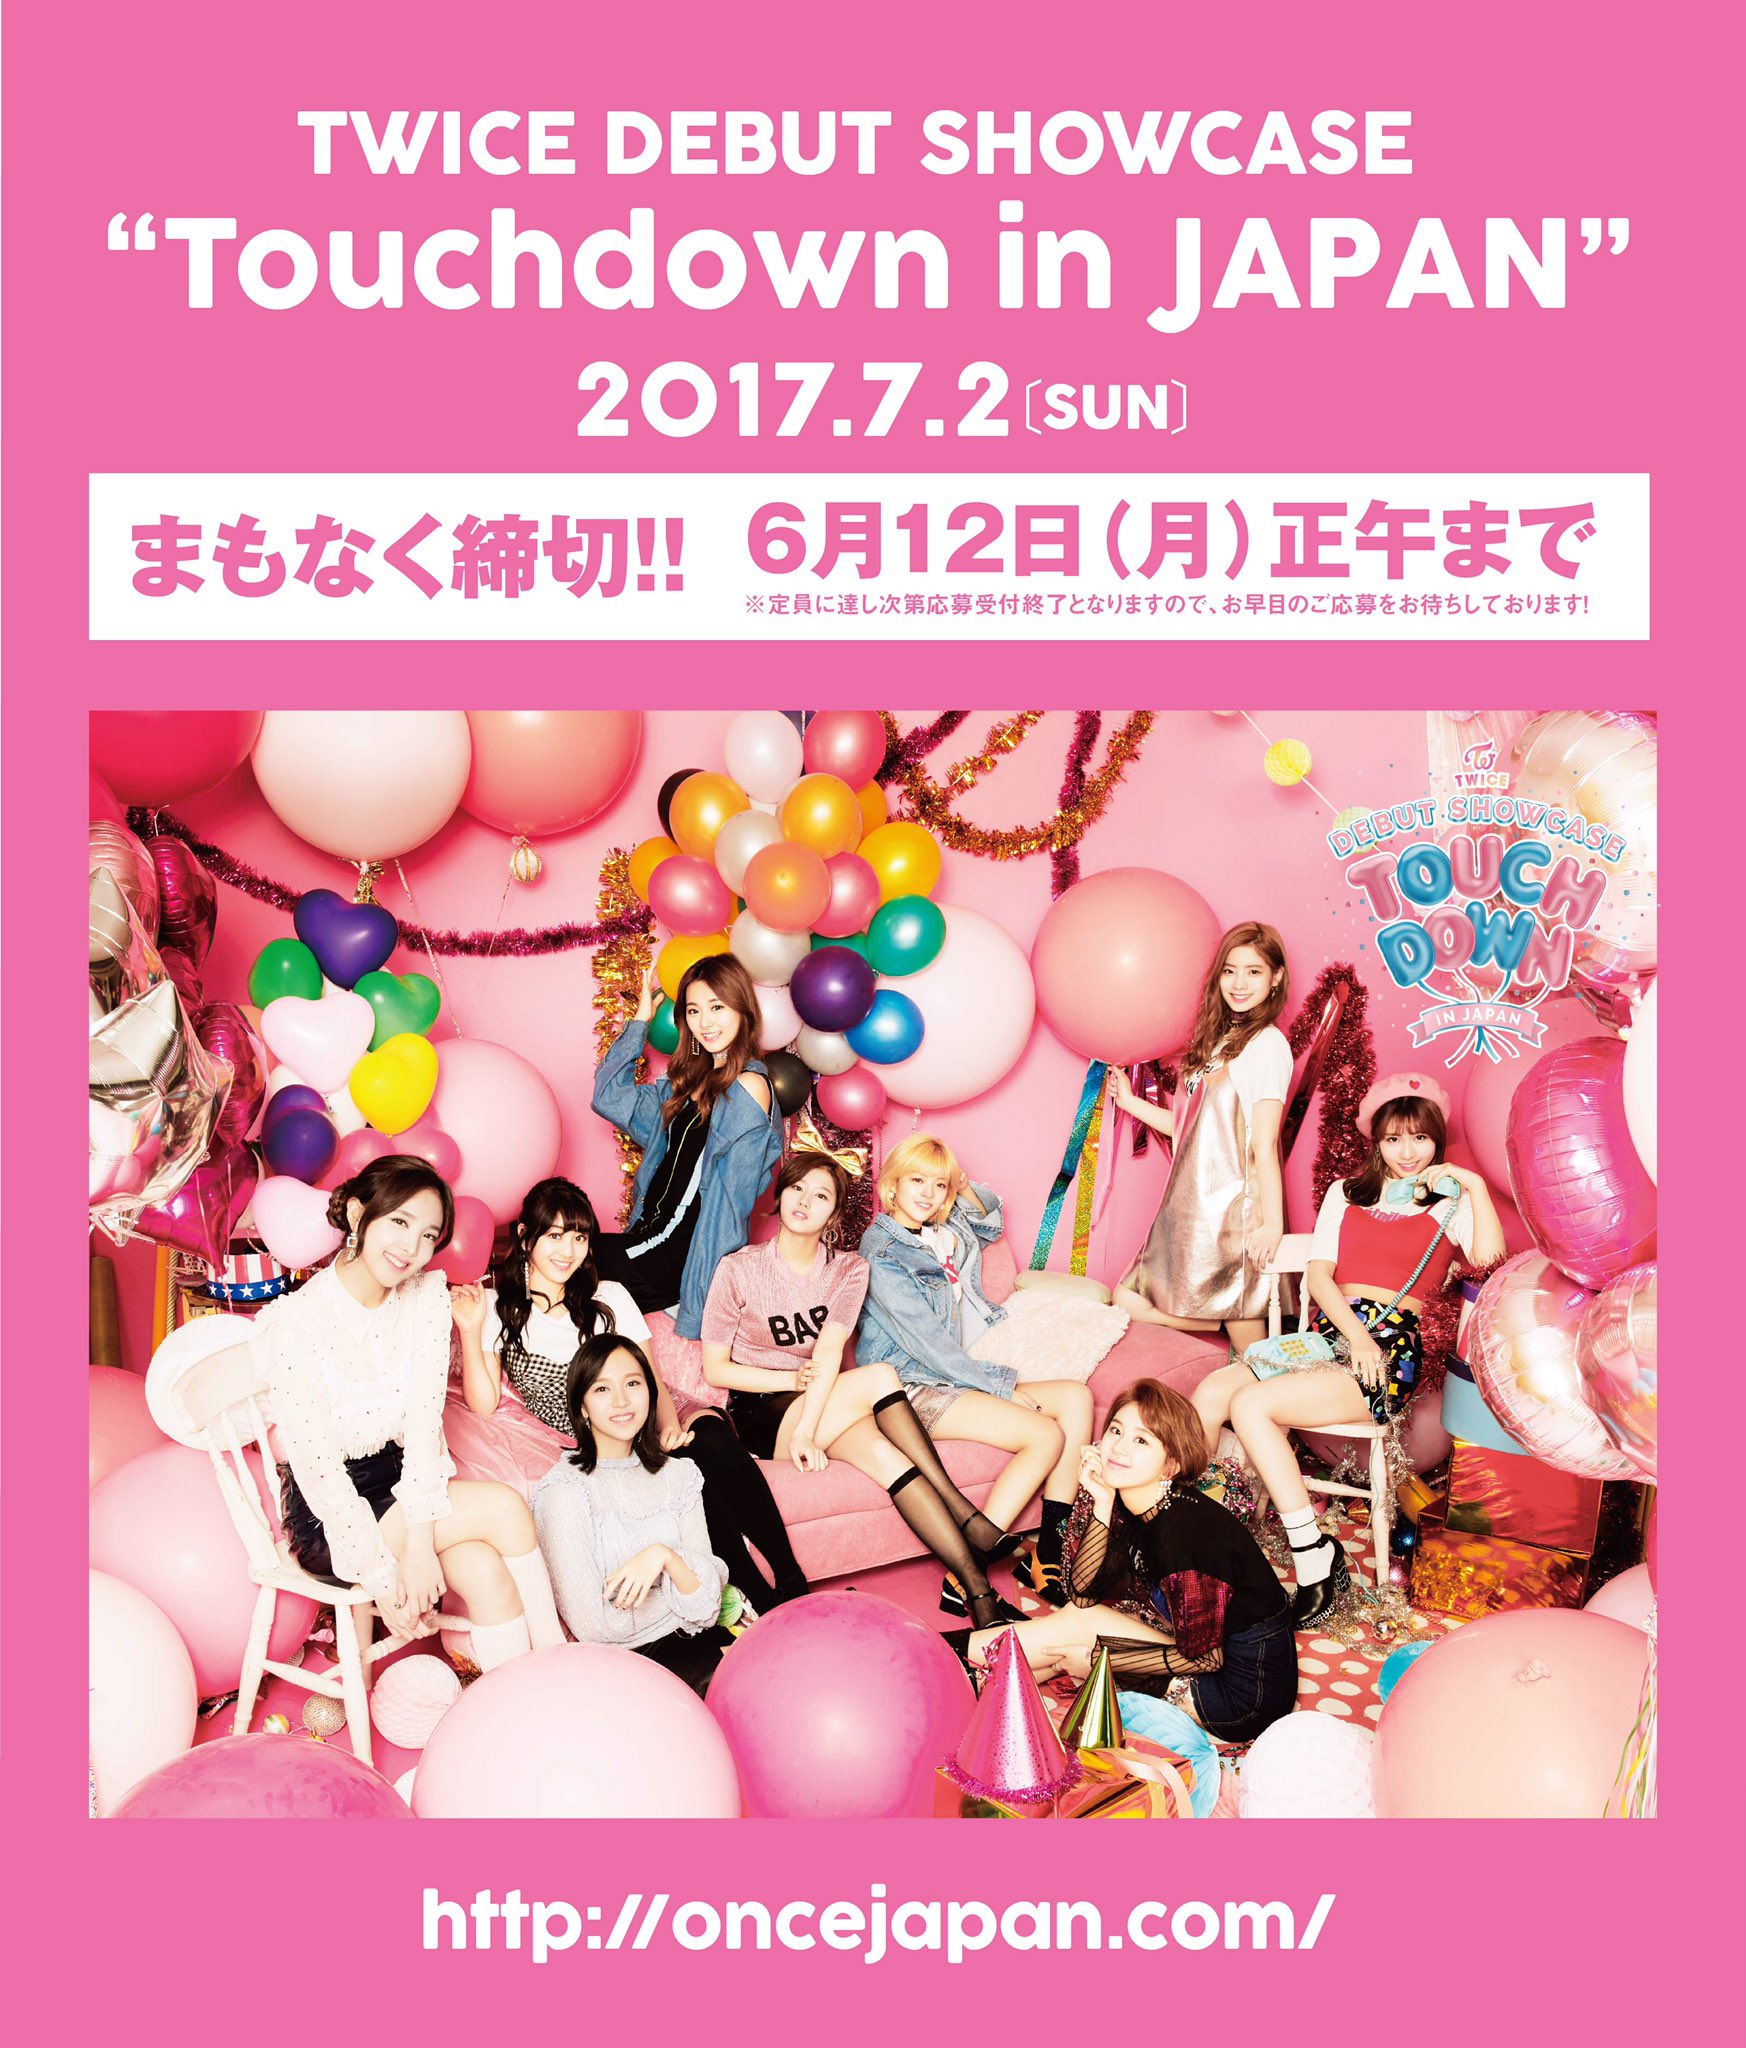 Twice Debut Showcase Touchdown In Japan Twice Wiki Fandom